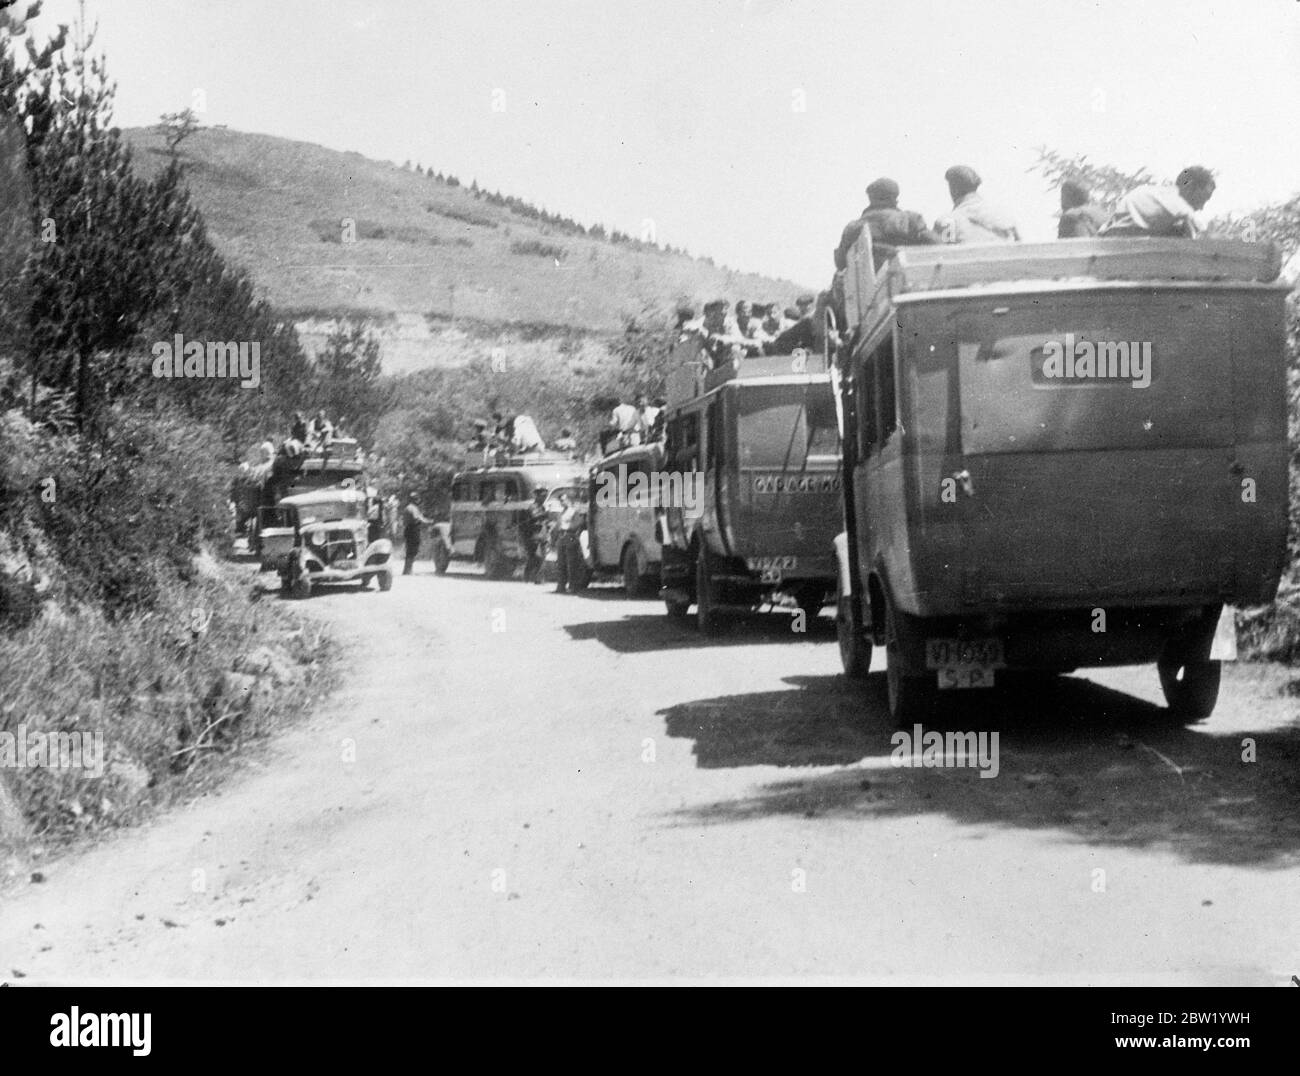 Des renforts de troupes gouvernementales loyalistes sont transportés d'urgence en minibus et en autocar à l'aide de Bilbao, la capitale basque, qui se maintient malgré les bombardements intensifs des forces rebelles. 18 juin 1937 Banque D'Images